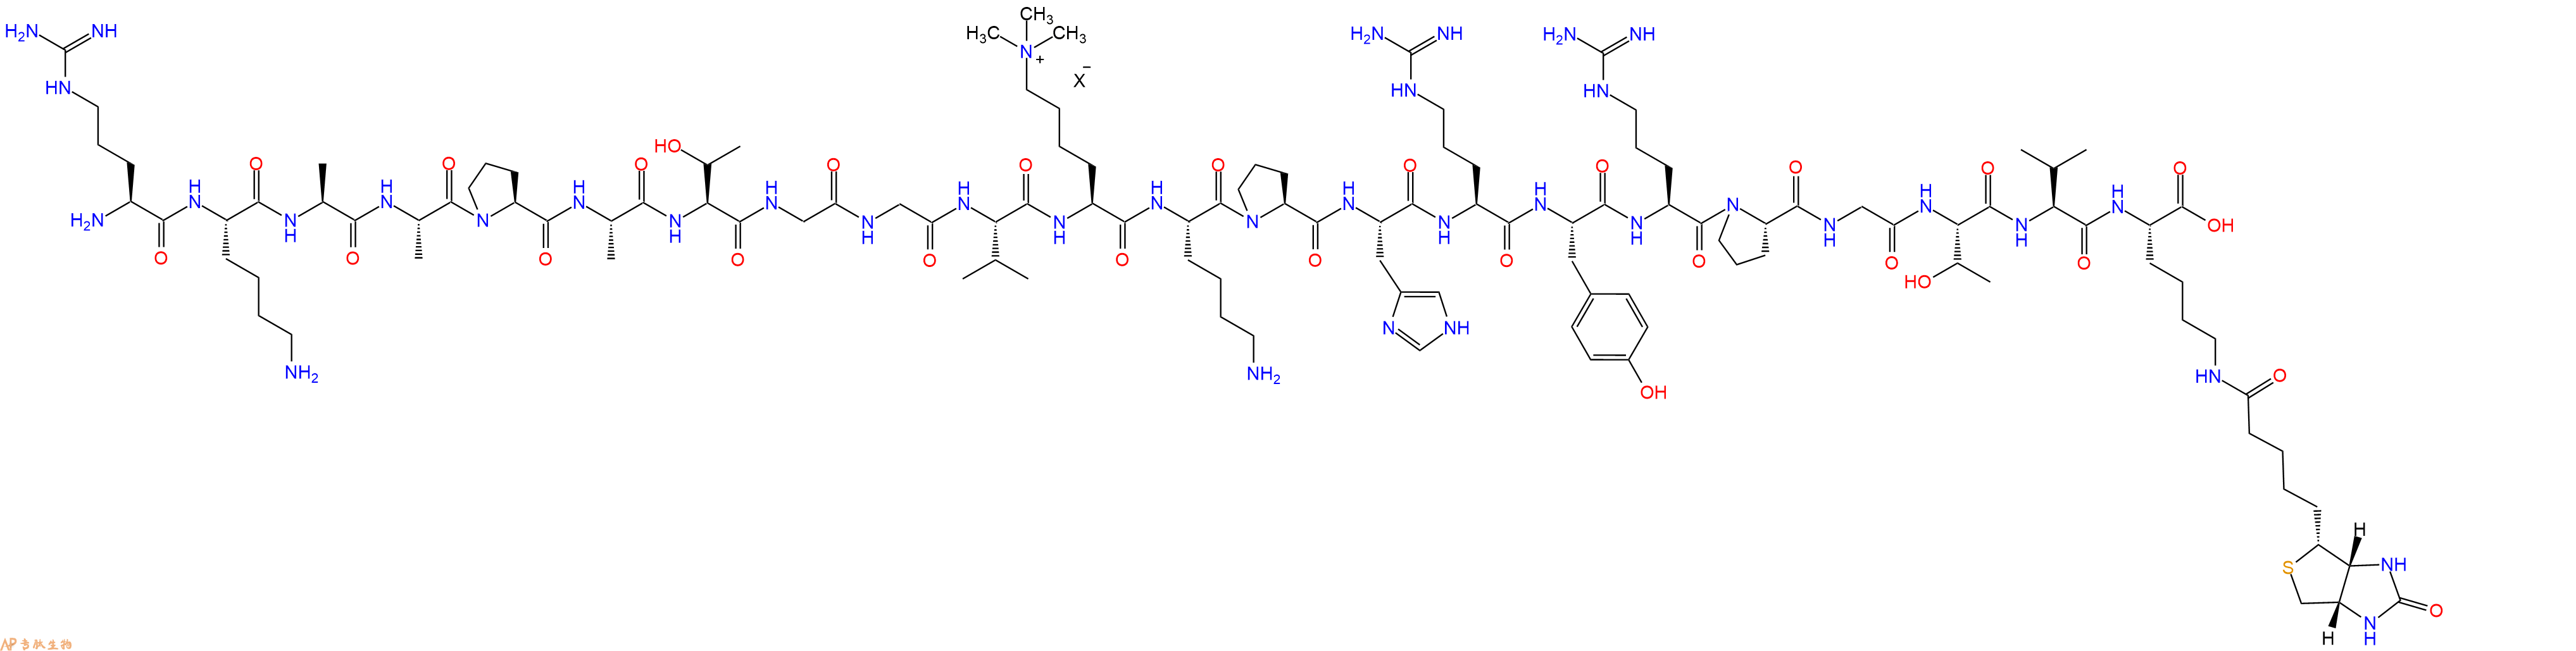 专肽生物产品组蛋白肽段[Lys(Me3)36]-Histone H3(26-46)-K(Biotin),